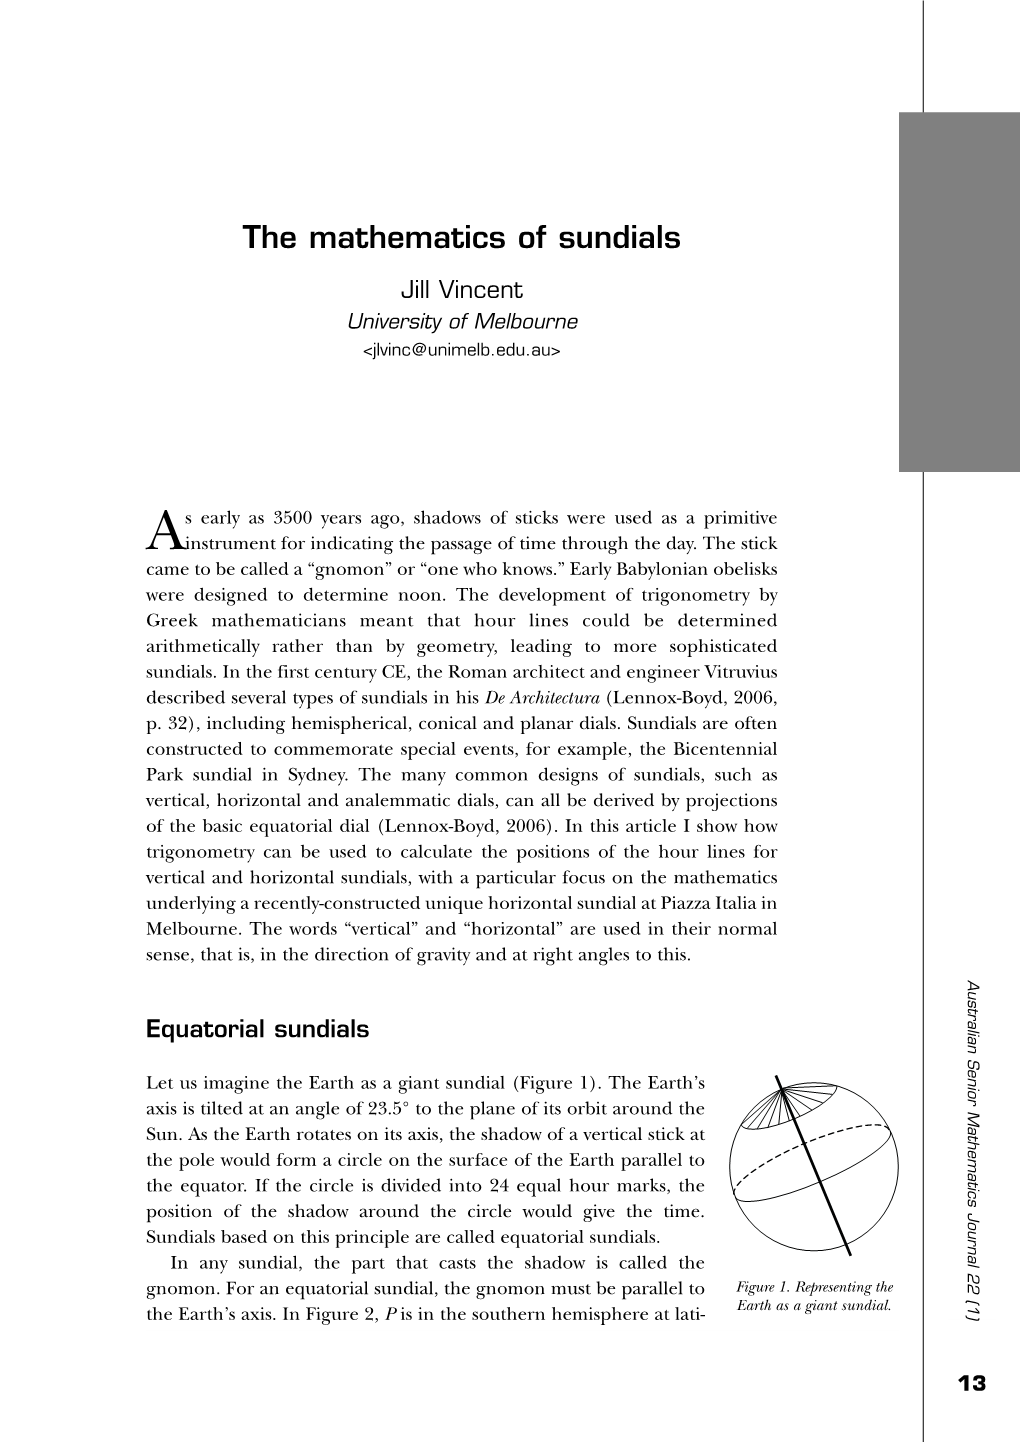 The Mathematics of Sundials